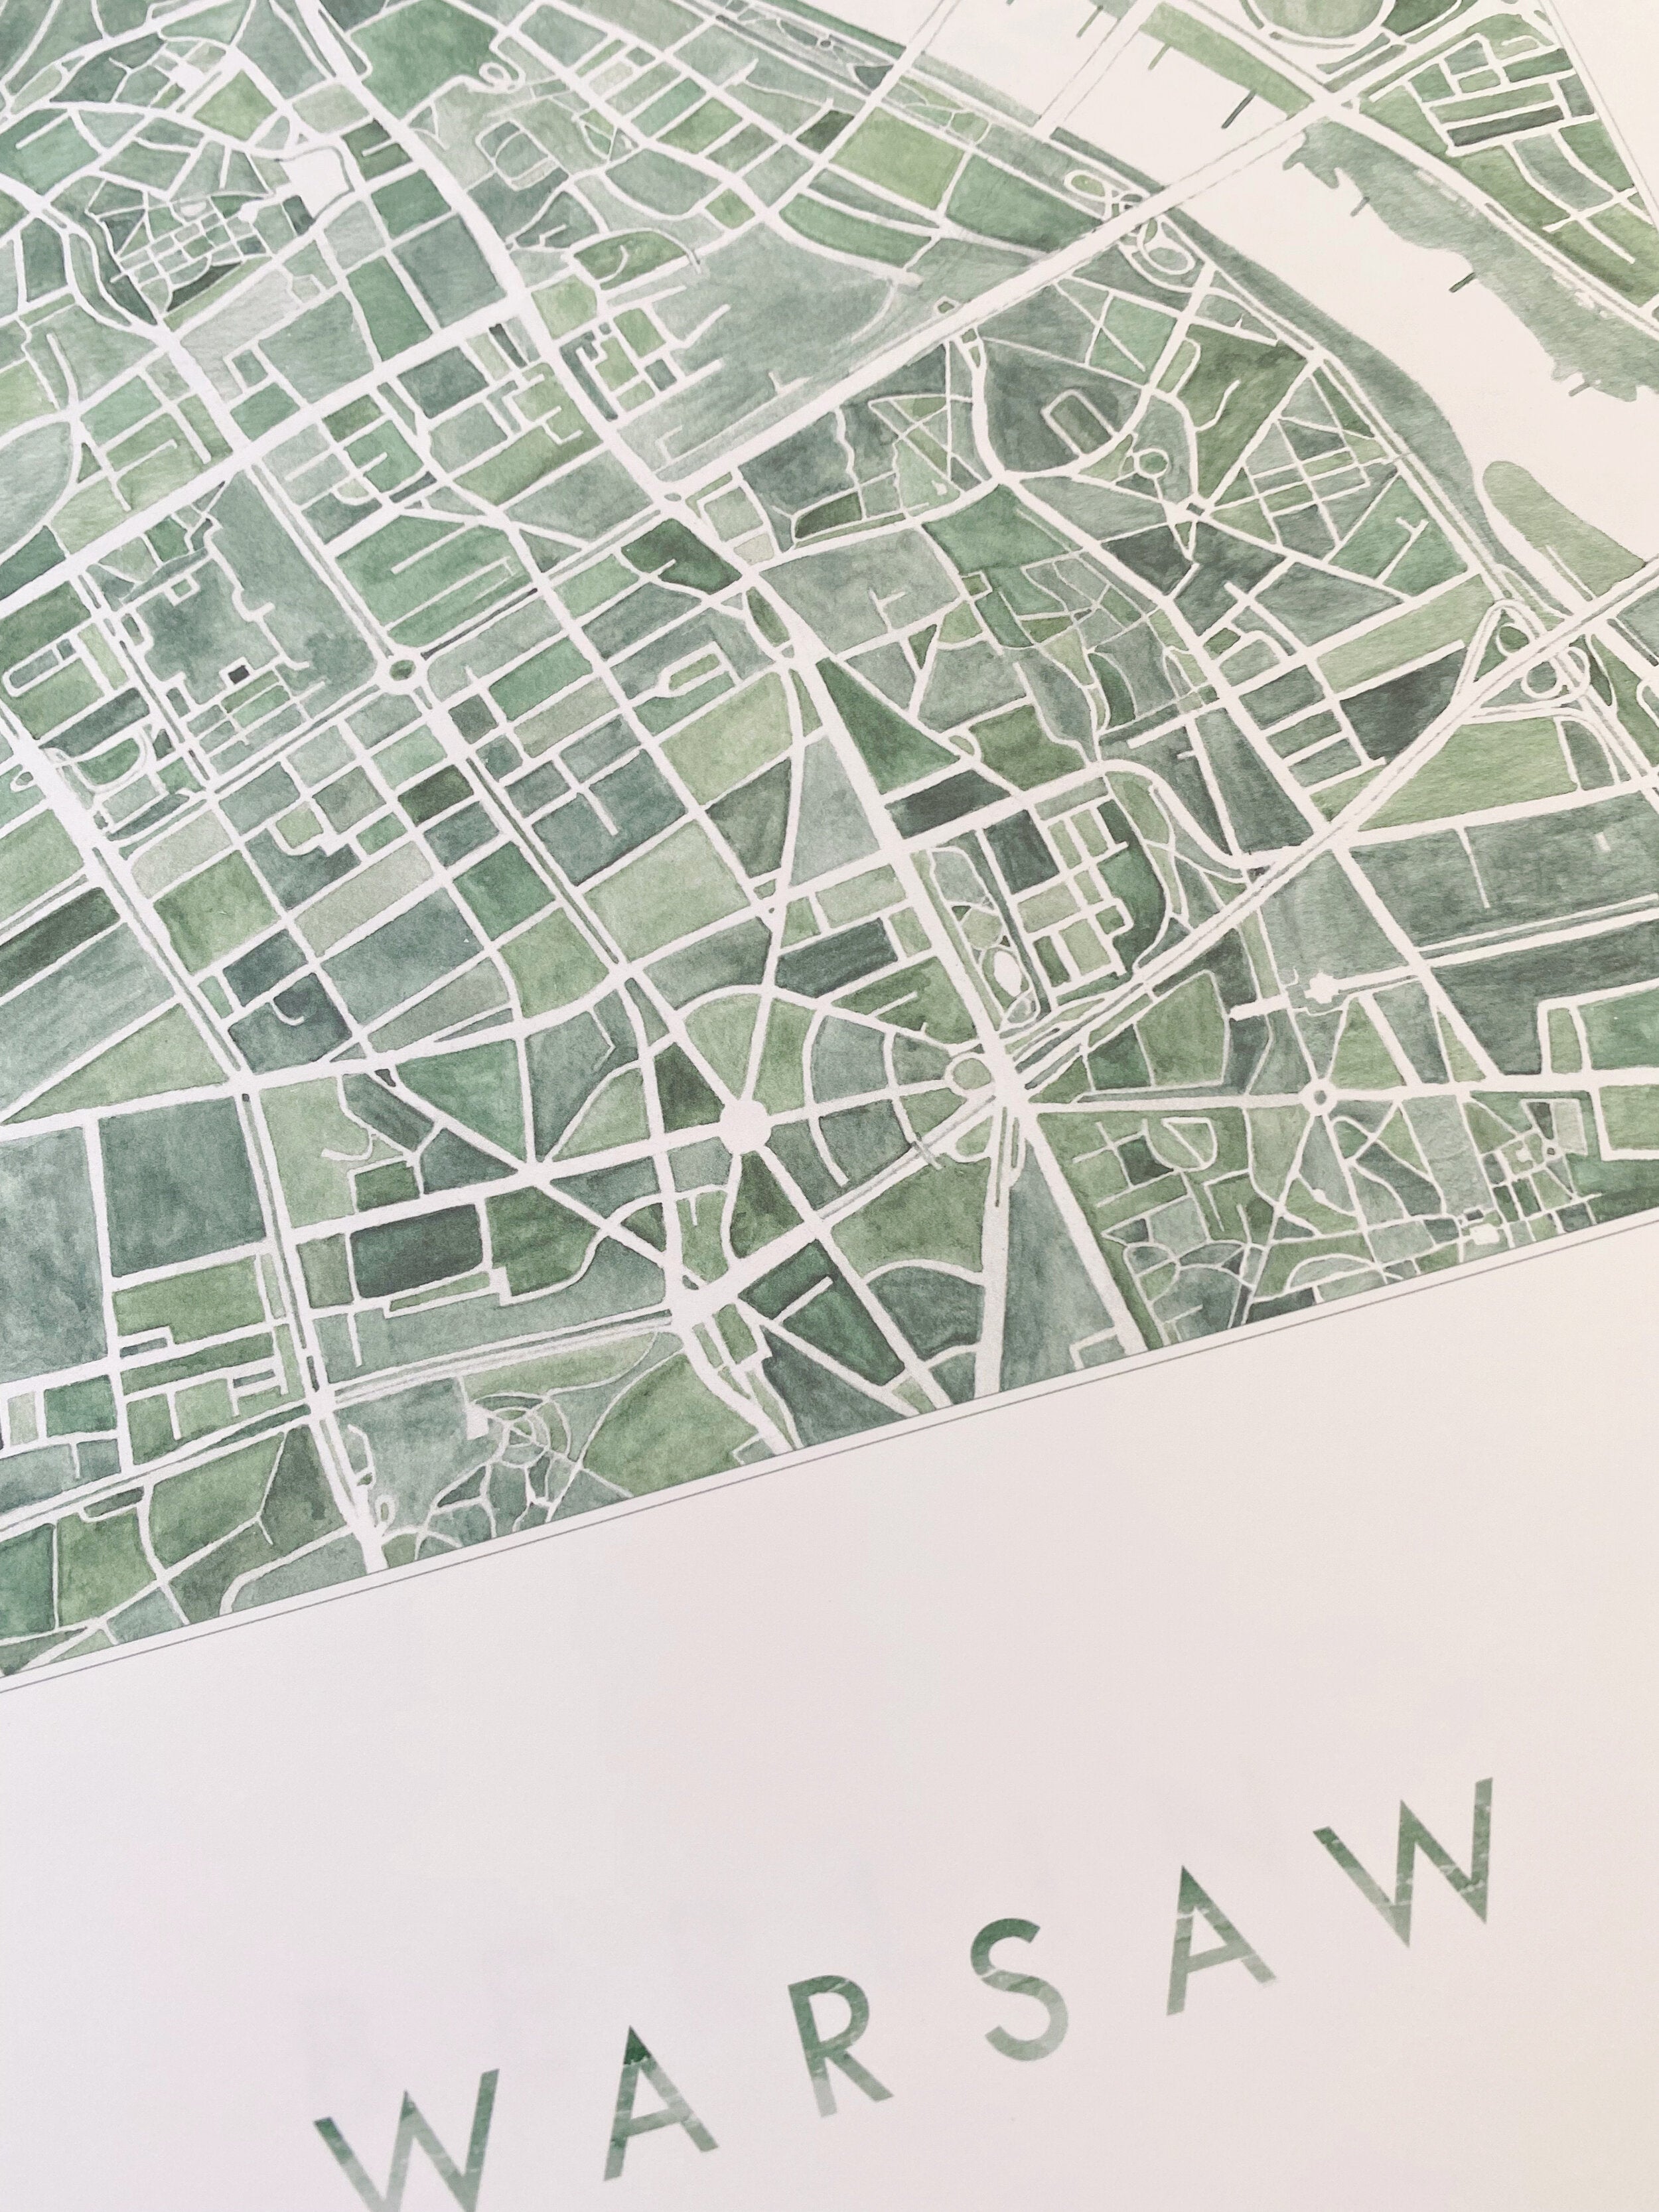 WARSAW Watercolor City Blocks Map: PRINT